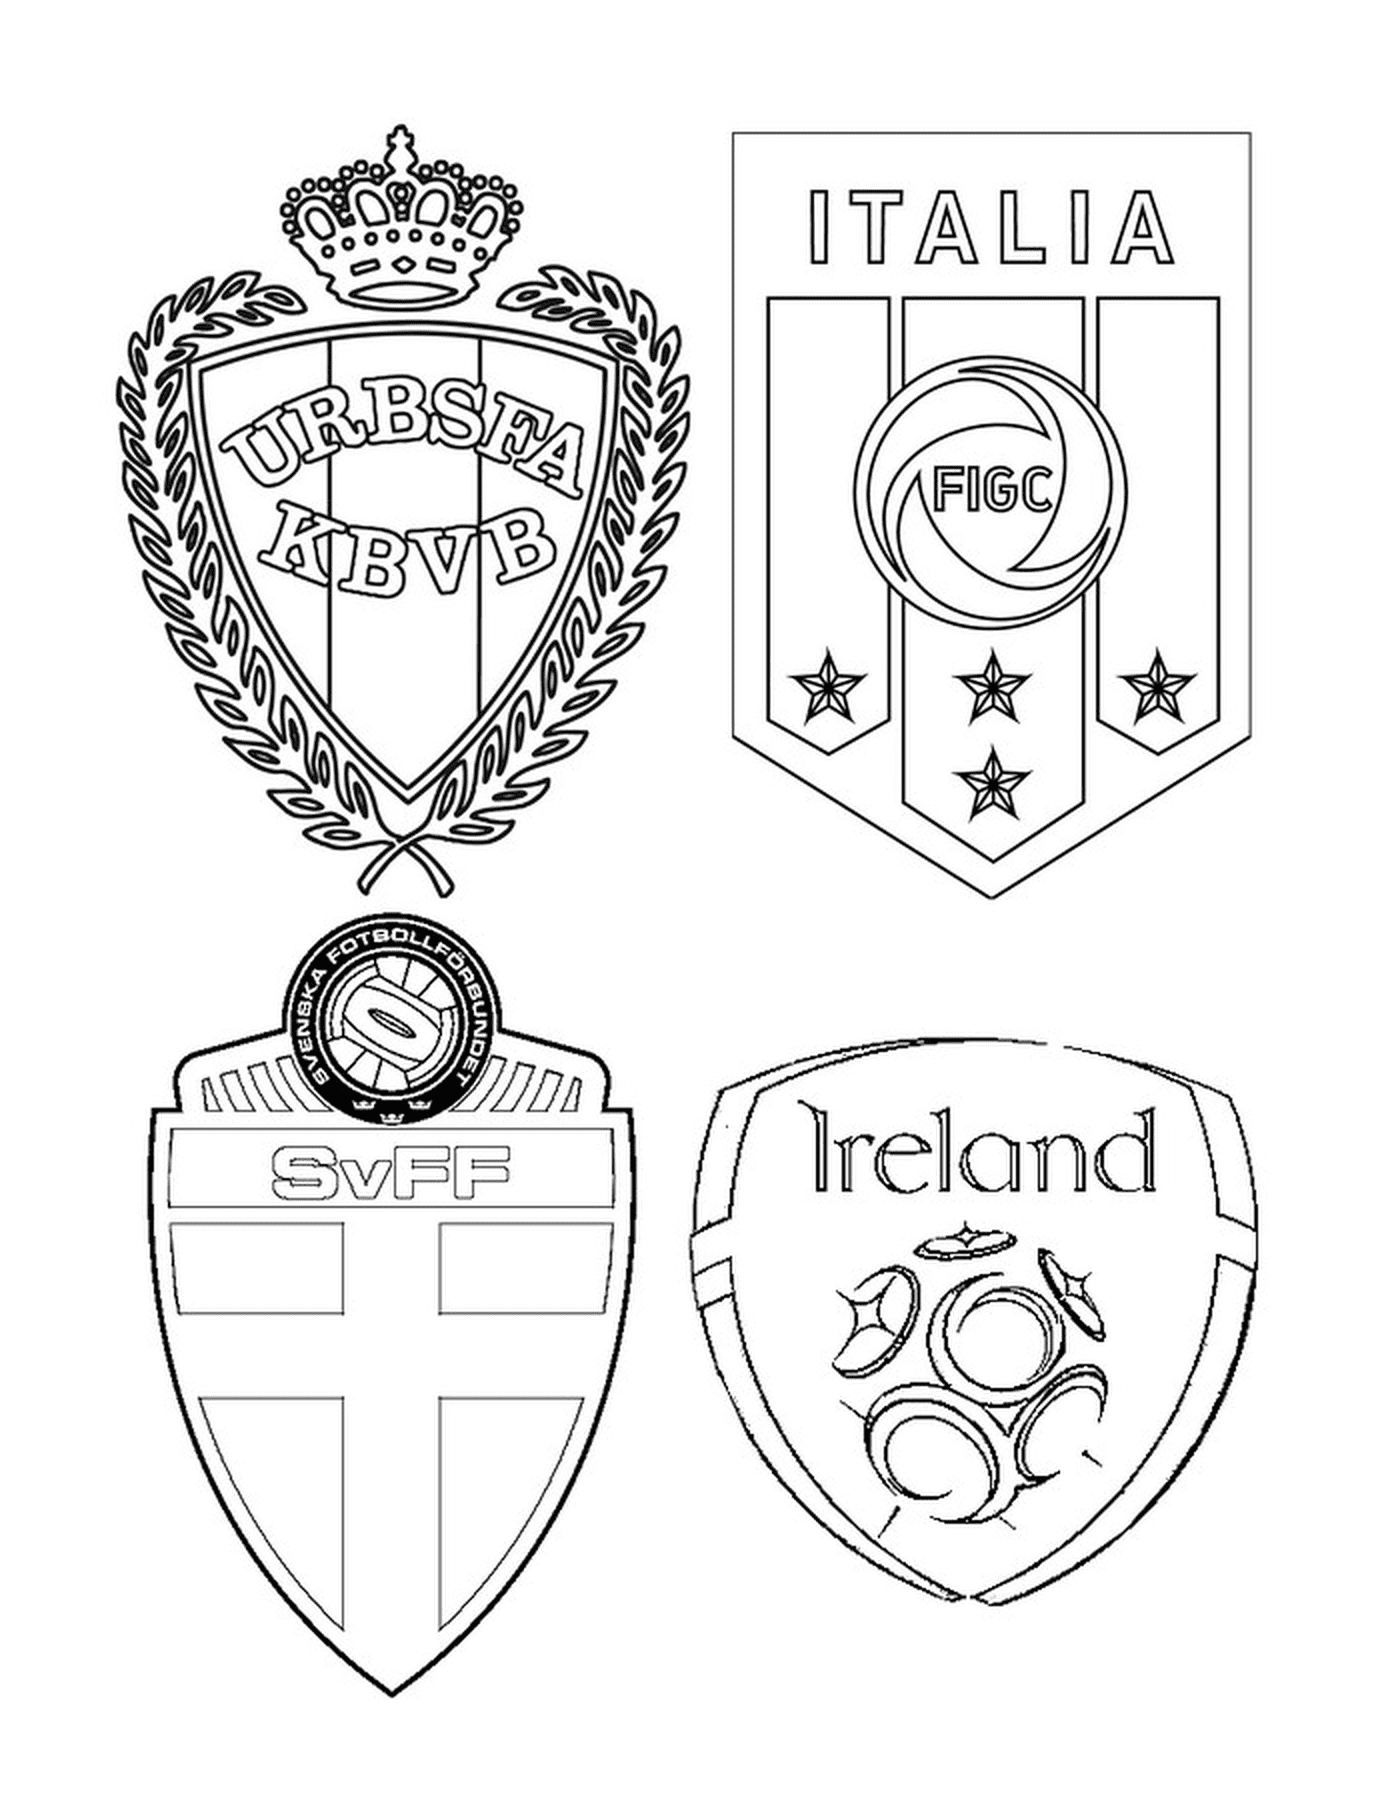   Quatre logos d'équipes de football avec des designs différents 